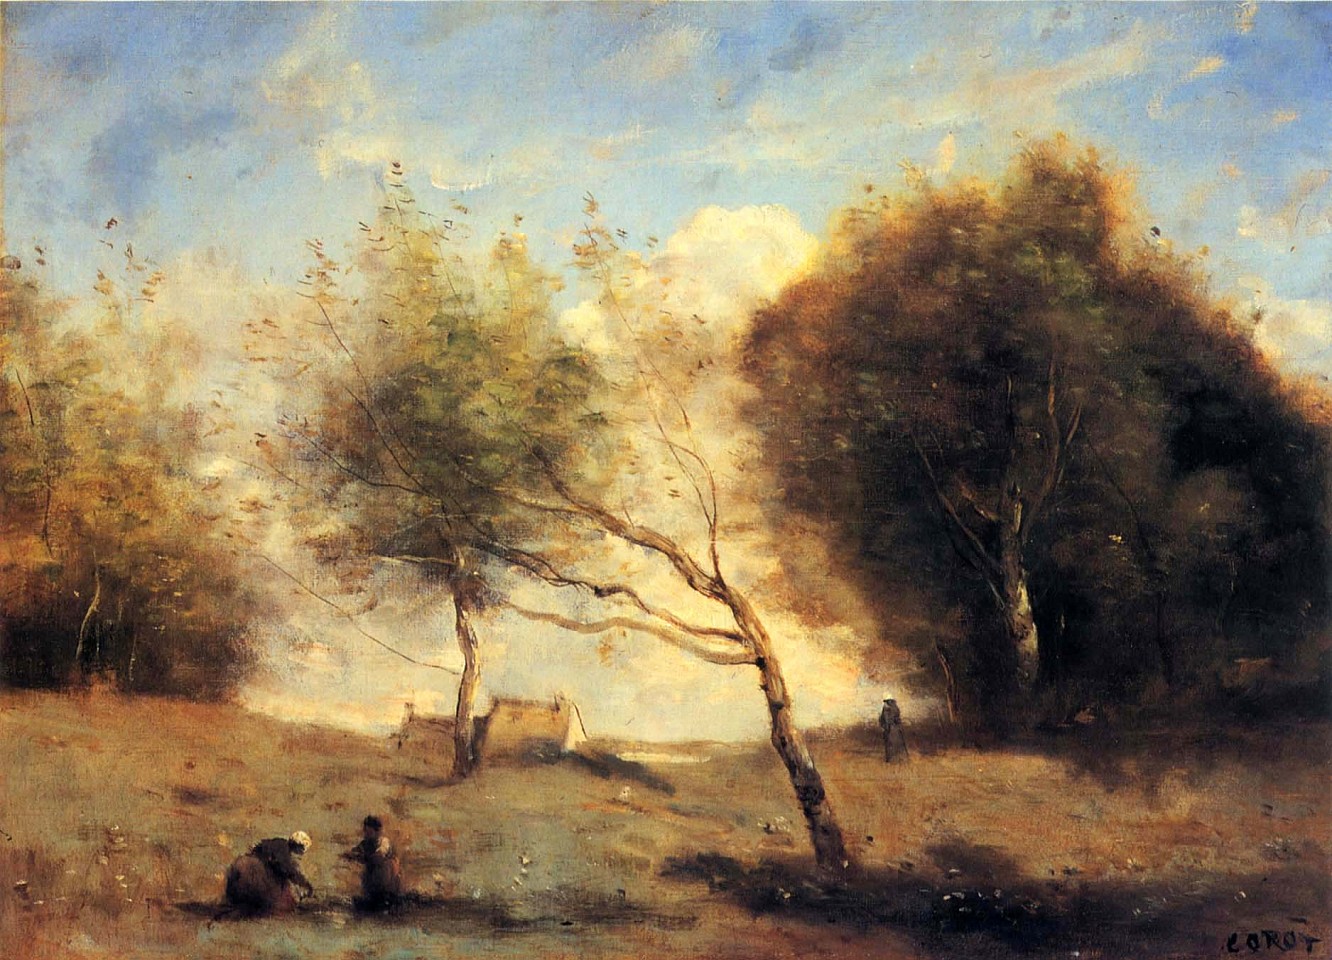 Jean Baptiste Camille Corot, Les Prés de la Petite Ferme, 1860-1870
Oil on canvas, 12 3/8 x 18 3/16 in. (33 x 46.3 cm)
COR-001-PA
Appraisal Value: $225,000 est.
User2: $0.00
User3: $0.00